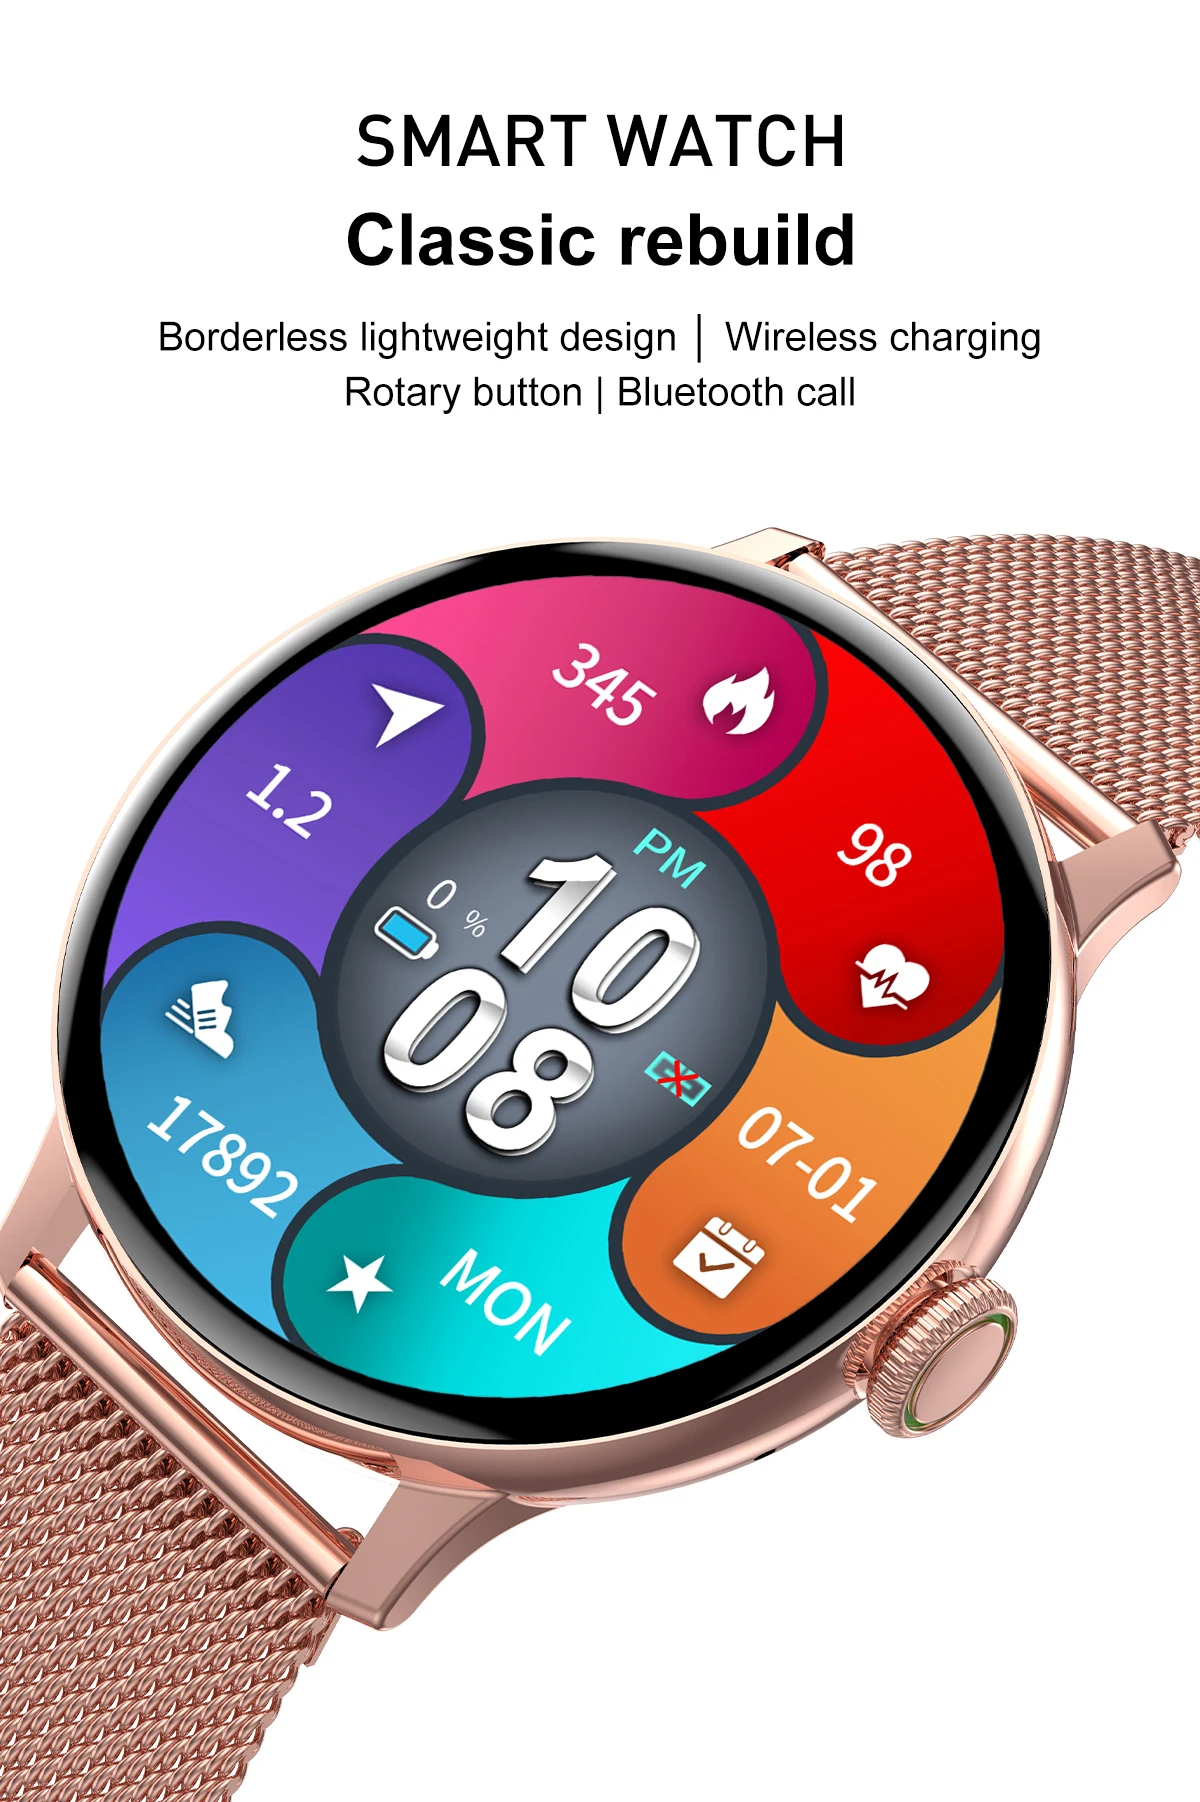 Reloj Smartwatch Para Mujer Redondo Android IPhone Llamadas +